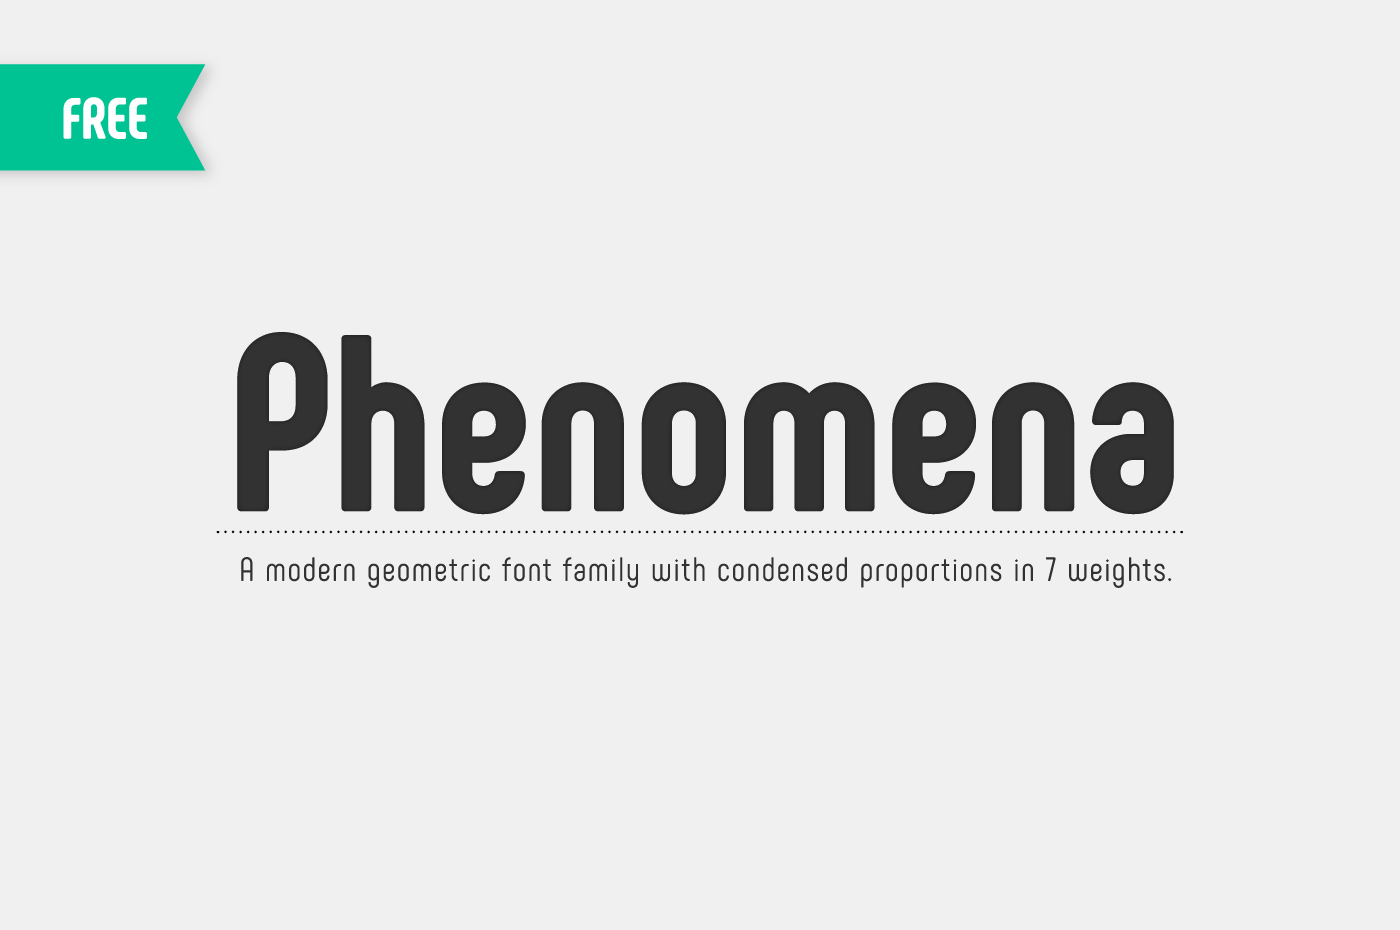 Phenomena Free Font Family